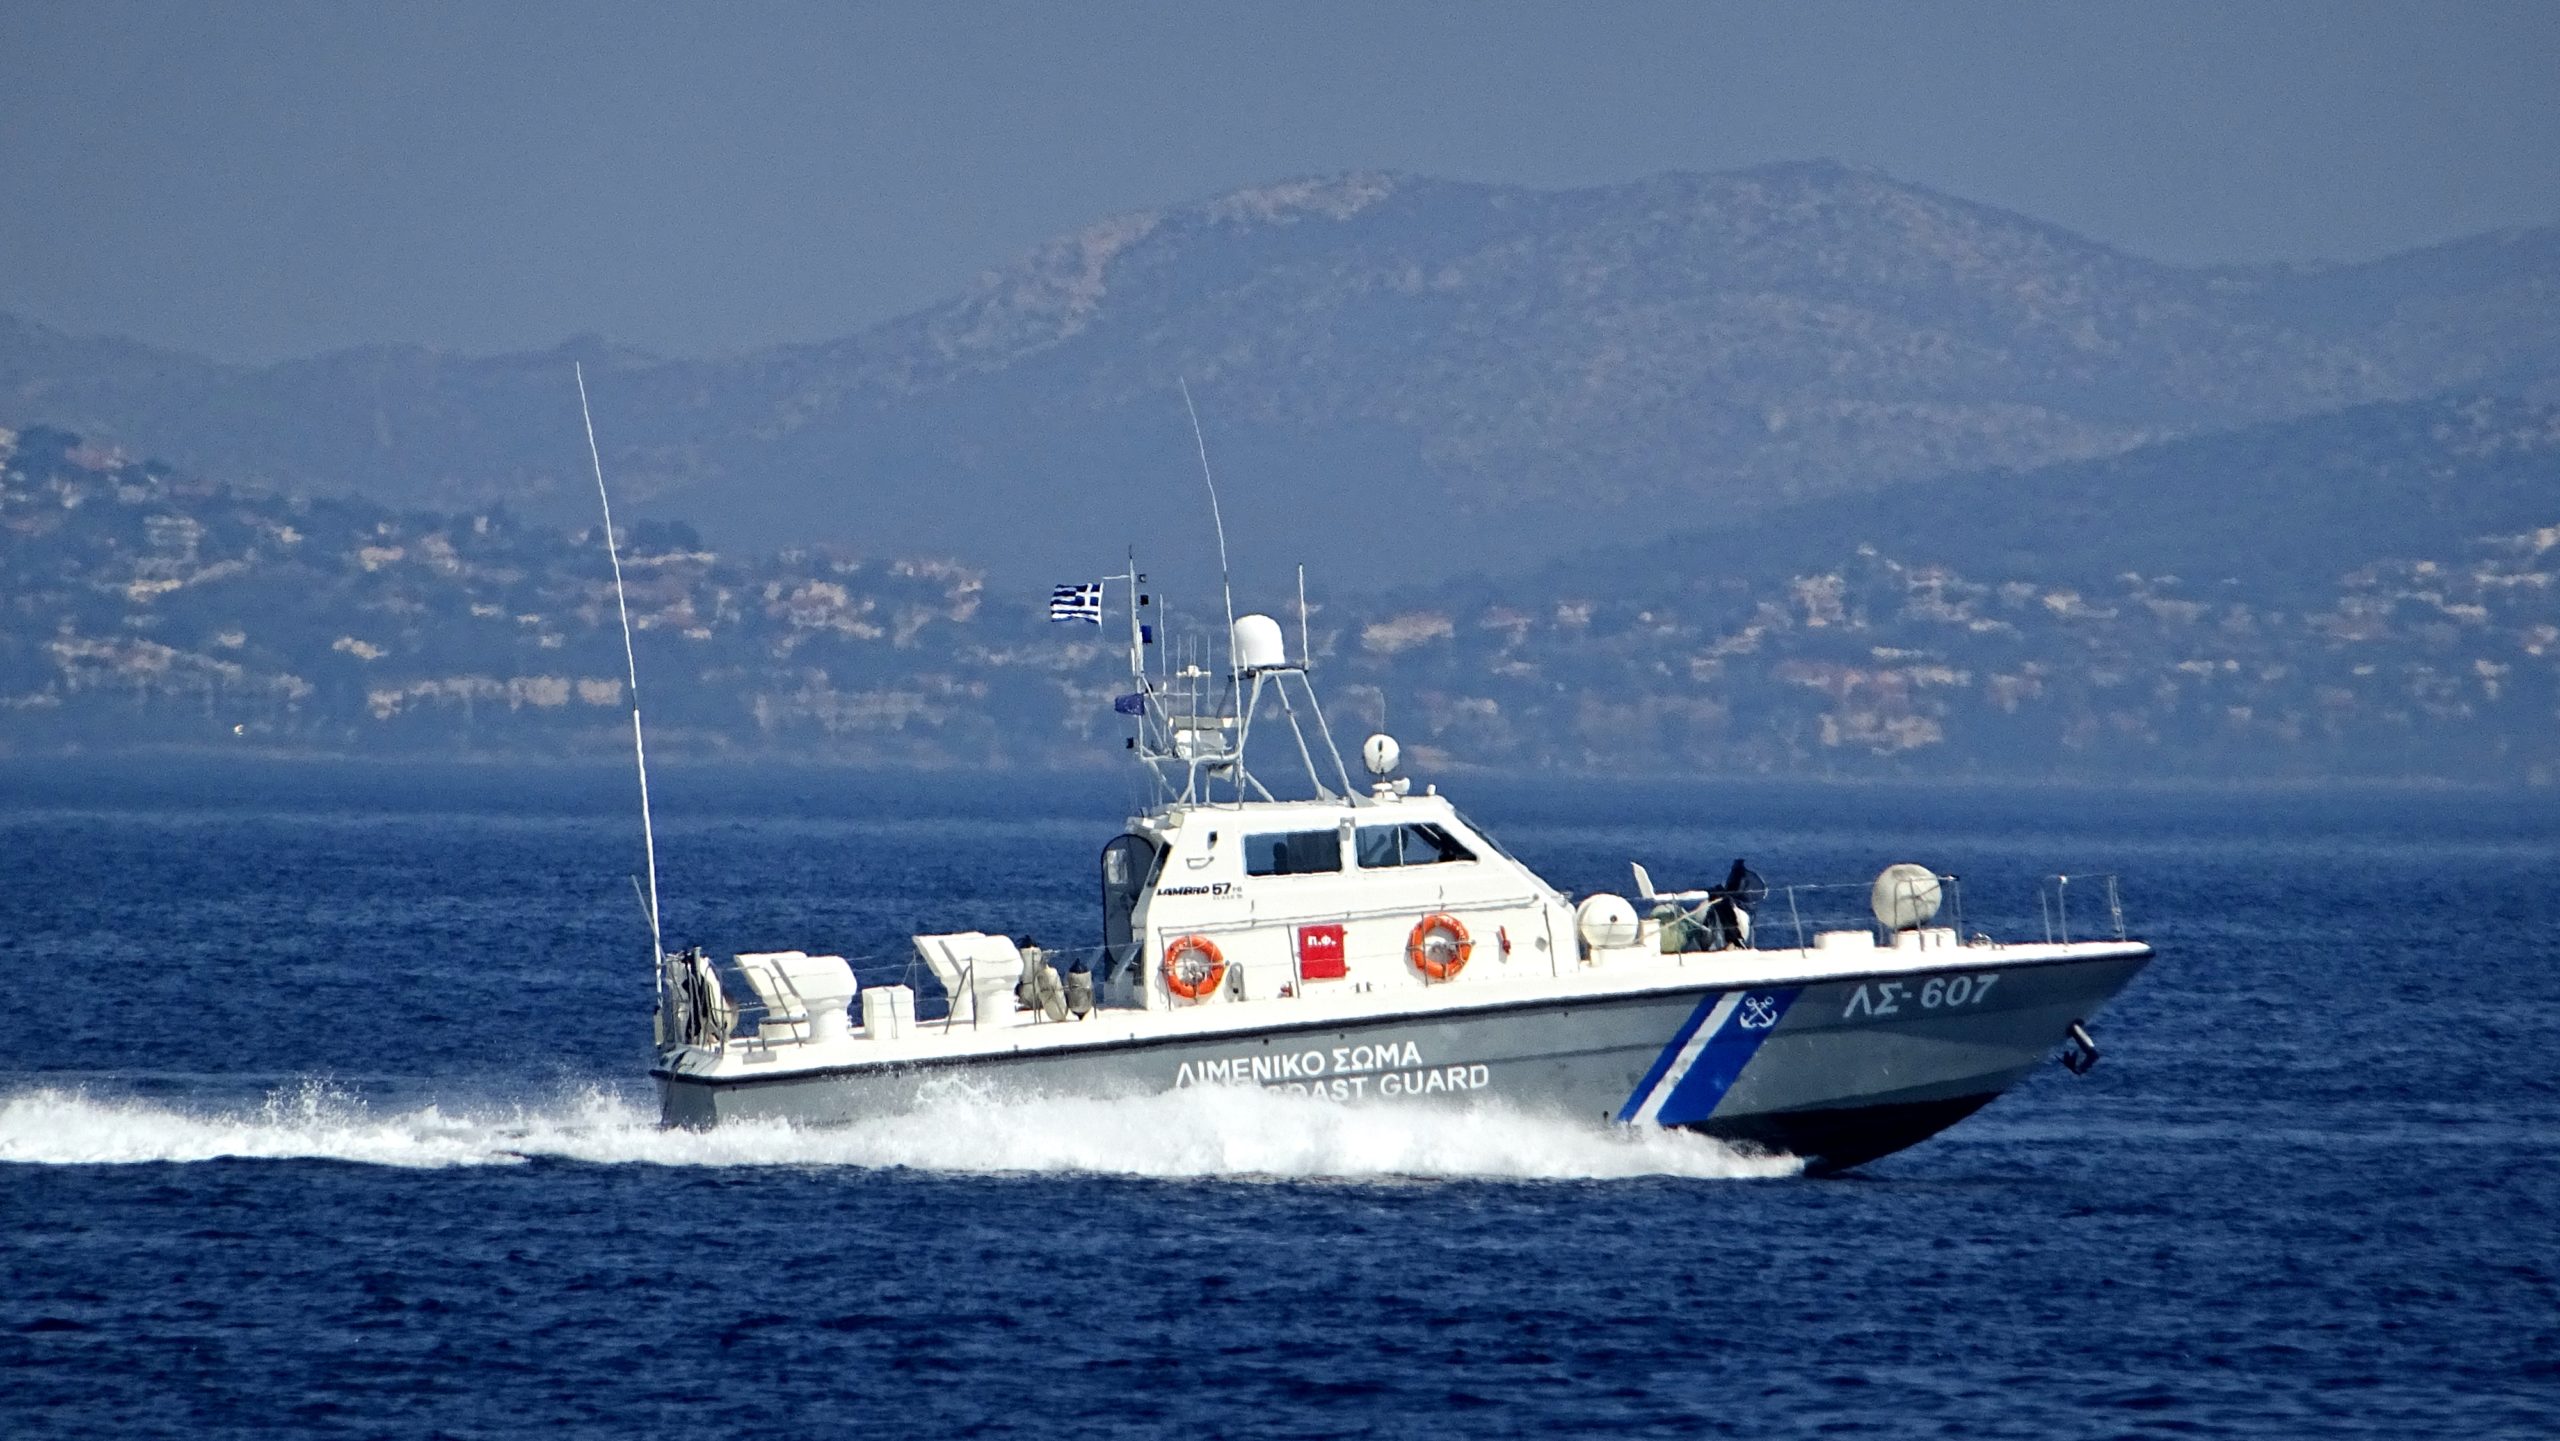 Λέσβος: Και δεύτερο τουρκικό σκάφος εισέβαλε στην Ελλάδα και προκάλεσε ζημιές σε σκάφος του Λ.Σ – Γιατί το απέκρυψαν;